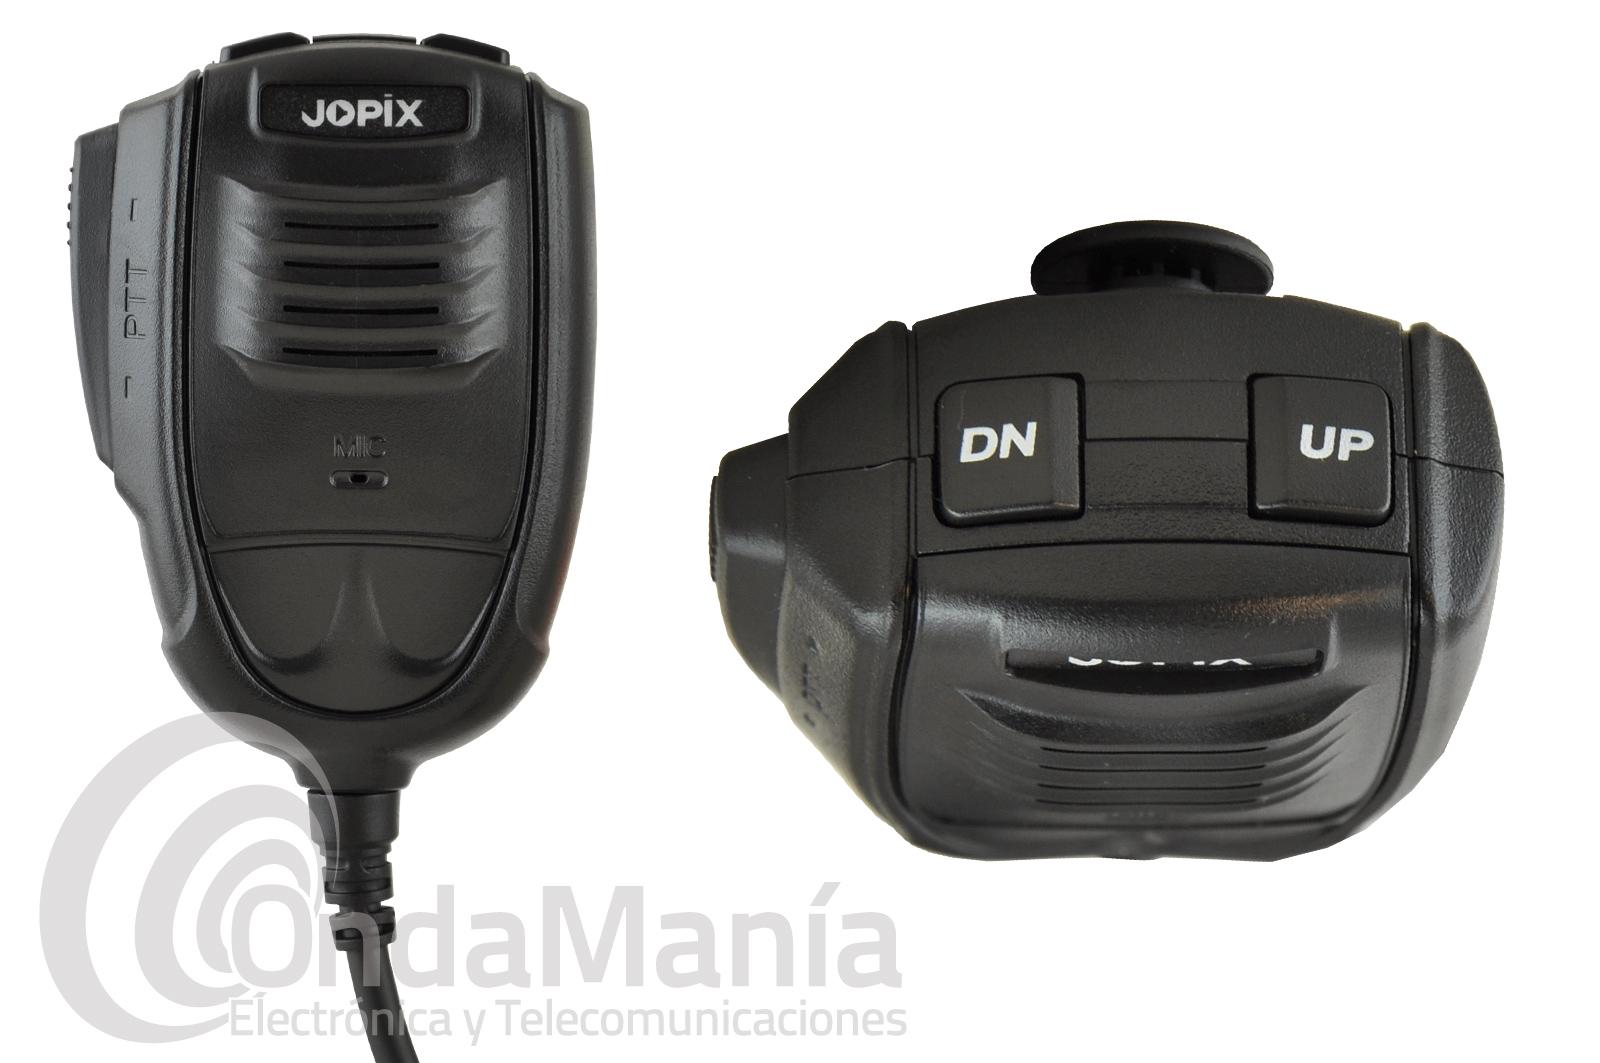 Jopix GS-60 Emisora móvil CB-27 AM-FM multinormas multifunción 12/2